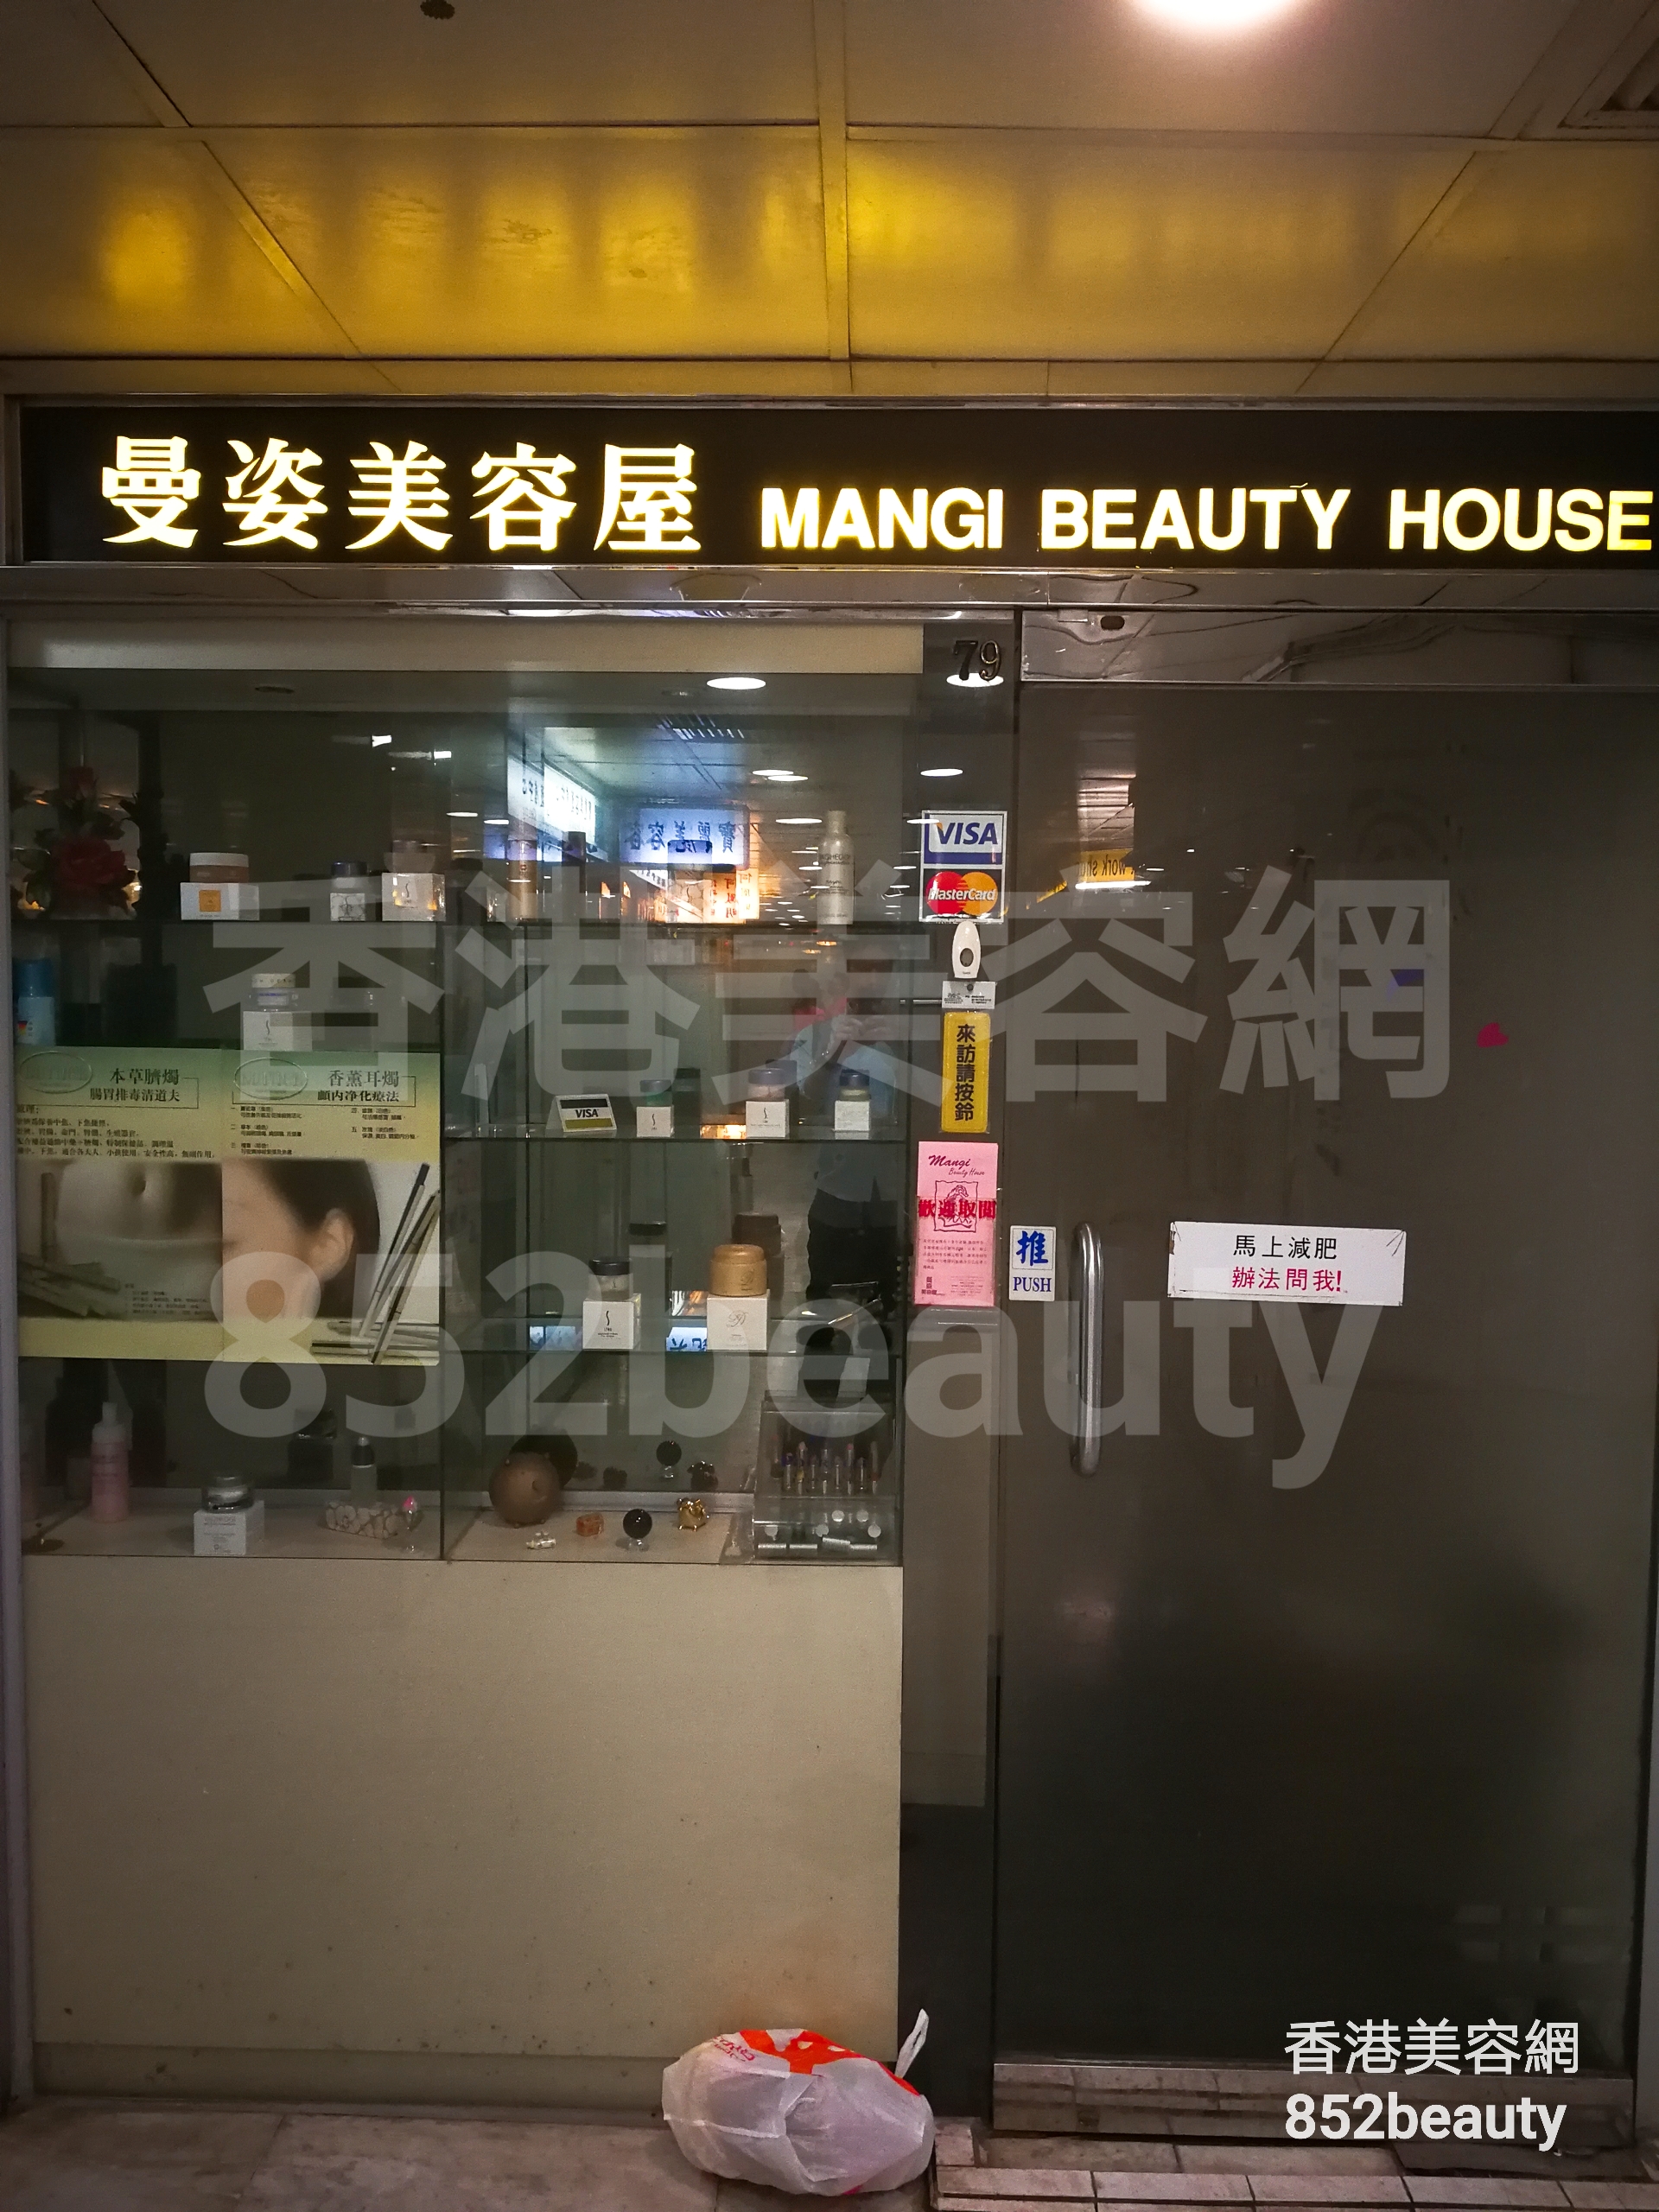 按摩/SPA: Mangi Beauty House